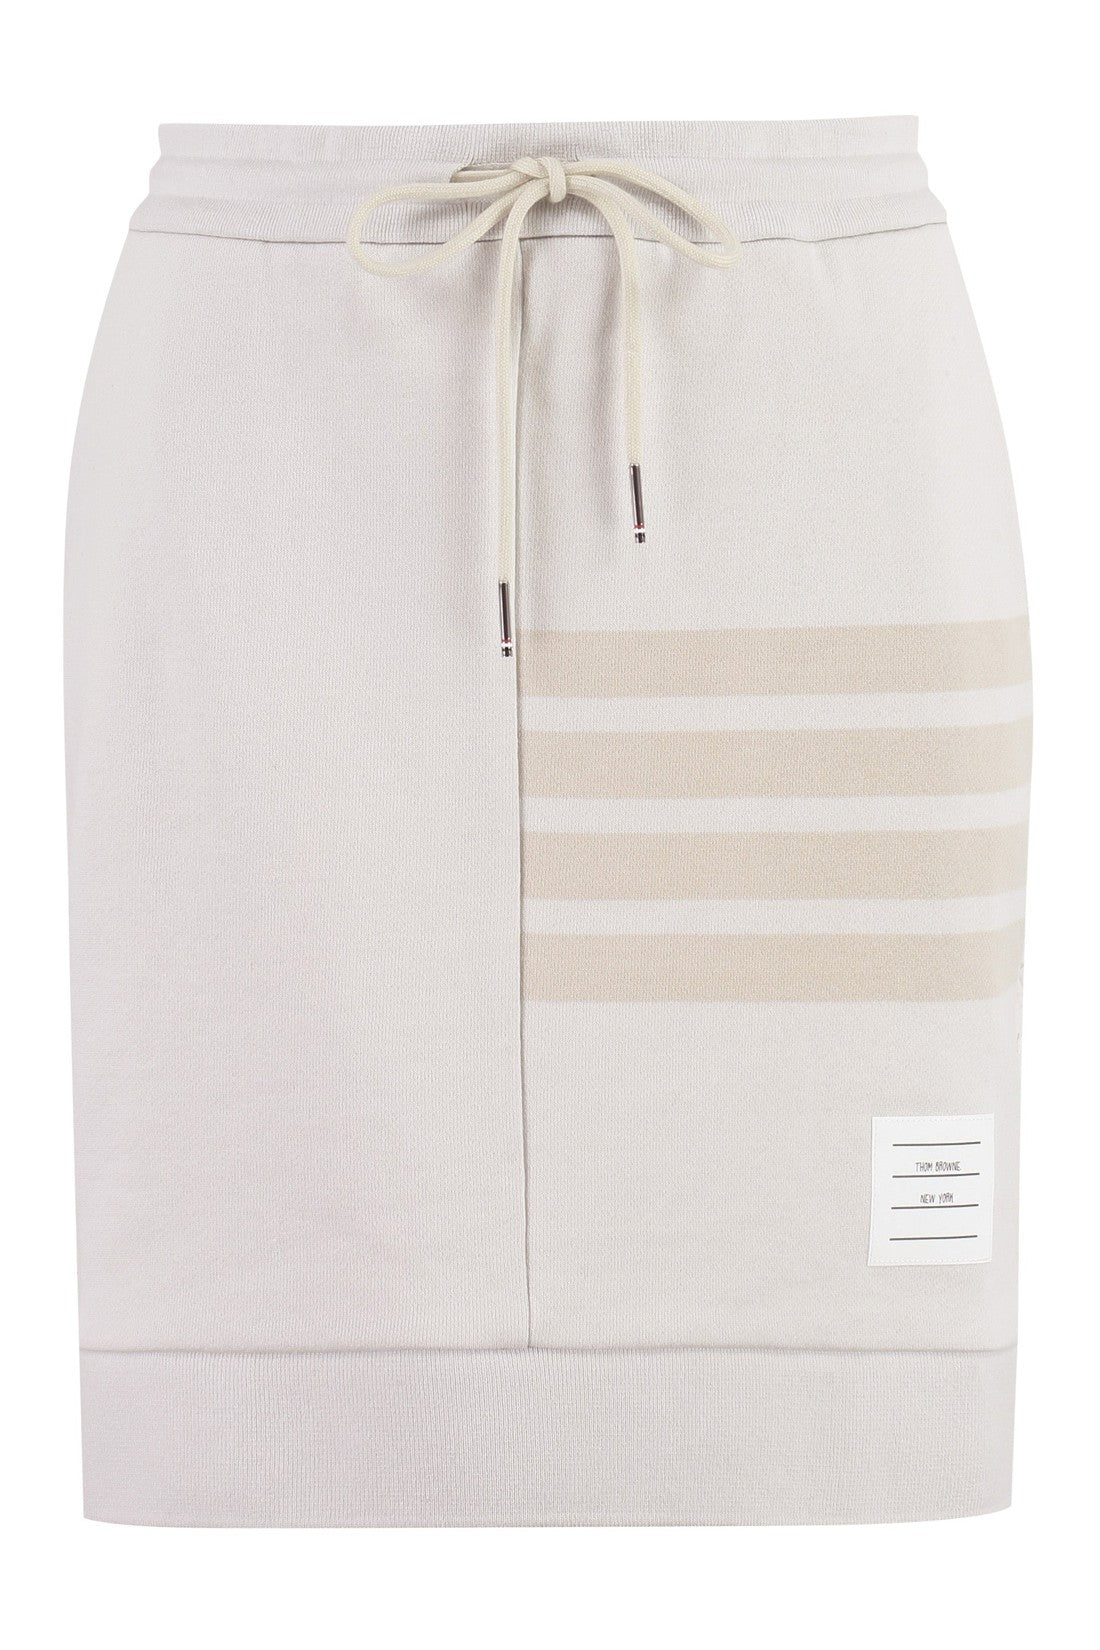 Thom Browne-OUTLET-SALE-Cotton mini-skirt-ARCHIVIST